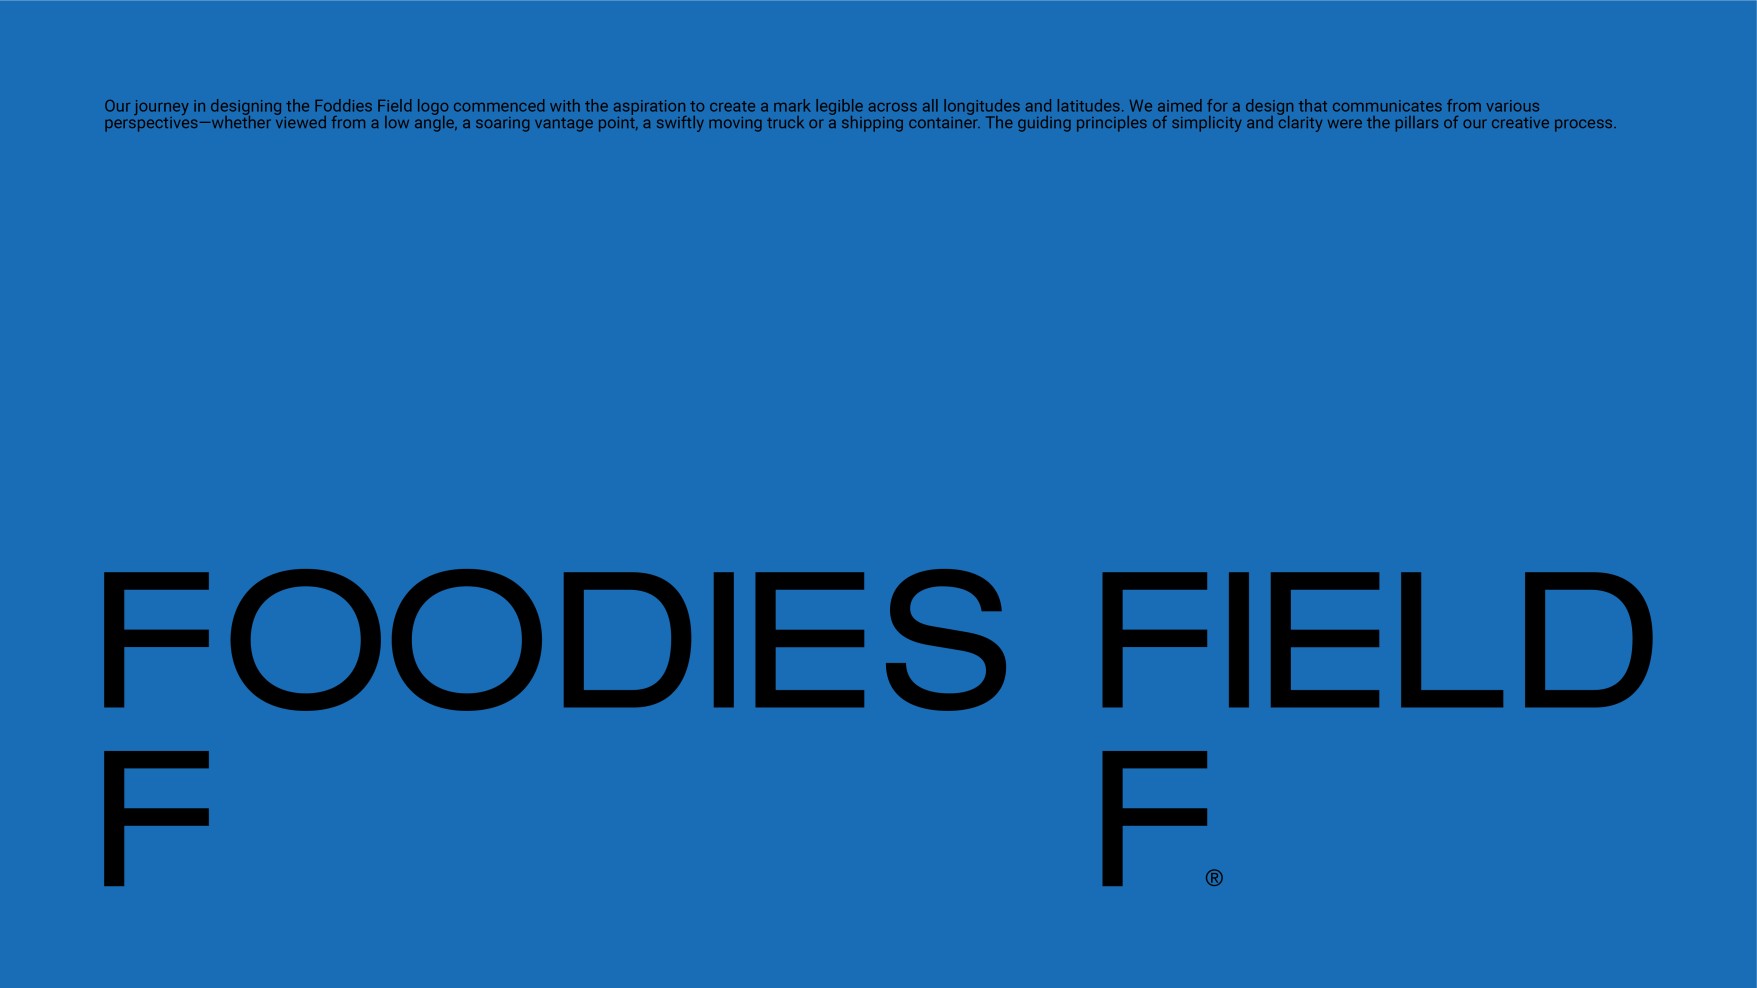  foodiesfield-f-01-PEkXP